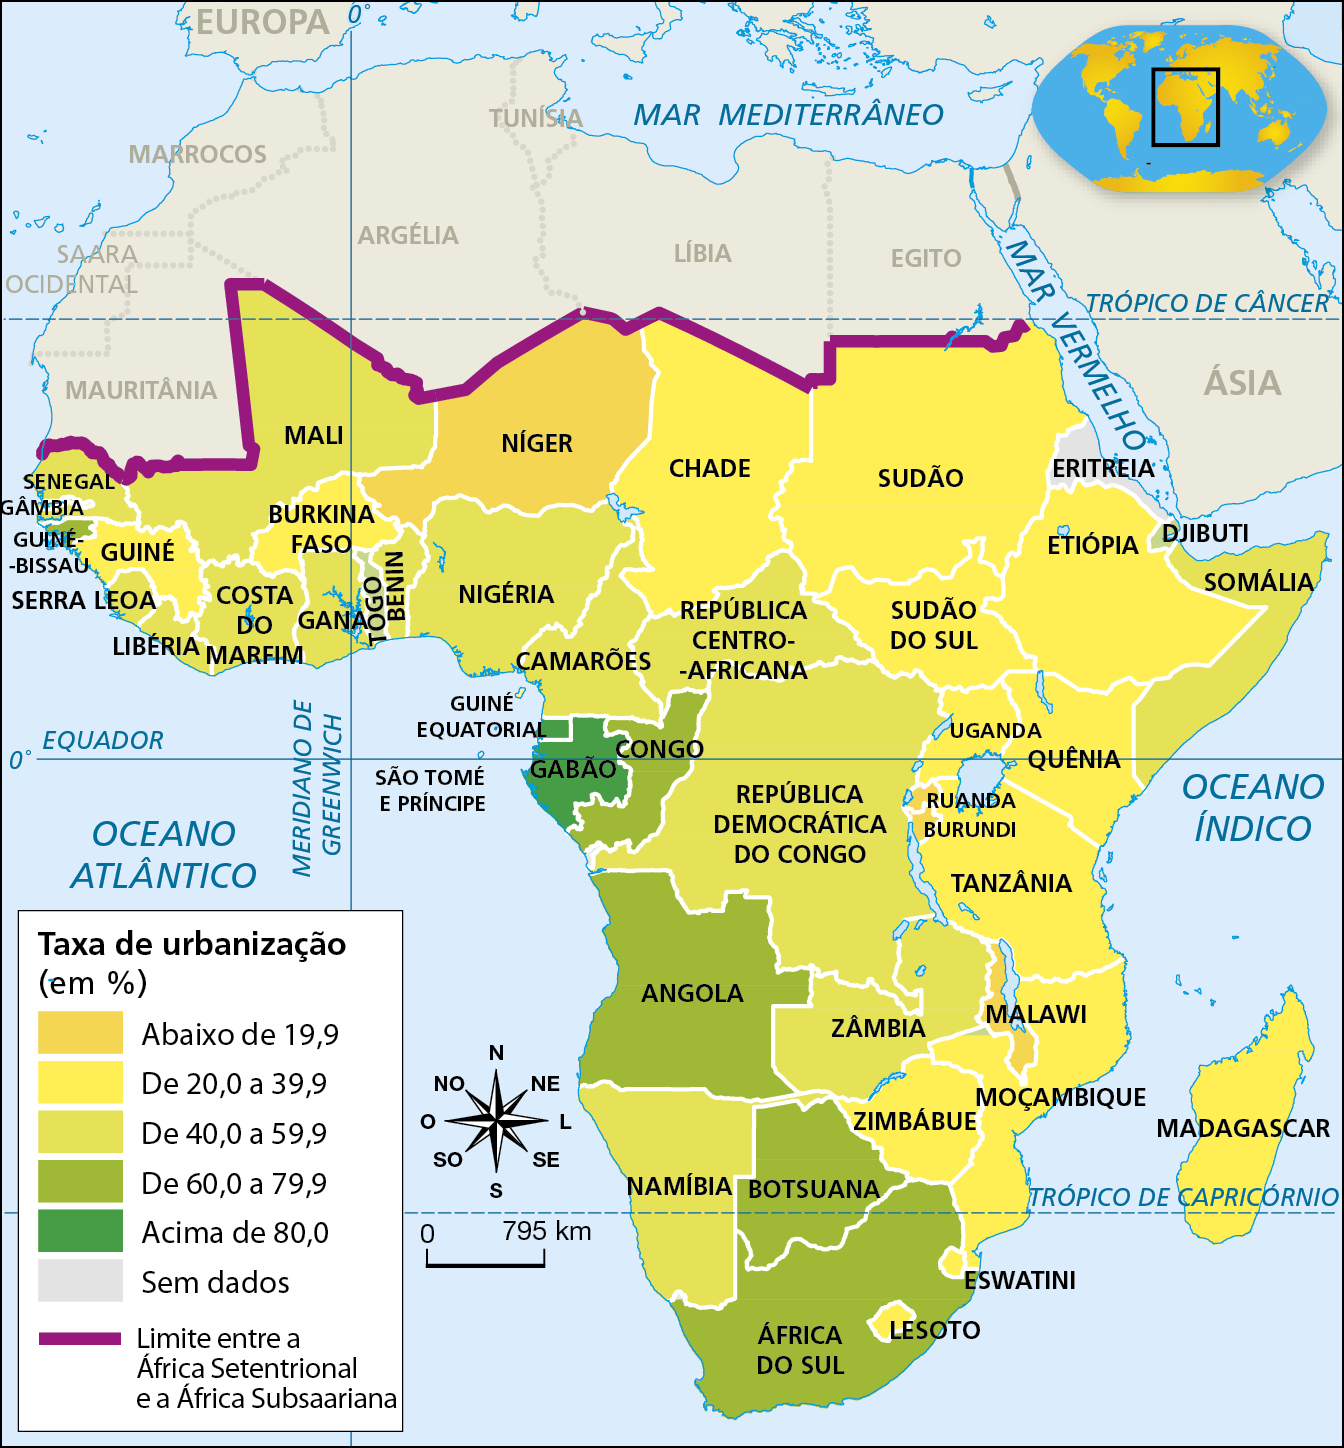 Mapa. África Subsaariana: população urbana (2020). 
Mapa temático referente à população urbana dos países da África Subsaariana.
Mapa da África destacando a taxa de urbanização, em porcentagem, de países da África Subsaariana.
Uma linha roxa representa o limite entre a África Subsaariana e a África Setentrional.
Taxa de urbanização dos países da África Subsaariana: Abaixo de 19,9%: Níger, Ruanda, Burundi, Malawi; de 20,0 a 39,9%: Guiné, Burkina Faso, Chade, Sudão, Sudão do Sul, Etiópia, Uganda, Quênia, Tanzânia, Moçambique, Zimbábue, Madagascar, Lesoto, Eswatini; de 40,0 a 59,9%: 
Senegal, Mali, Libéria, Costa Do Marfim, Gana, Benin, Nigéria, Camarões, Somália, Zâmbia, Namíbia, República Centro-Africana, República Democrática do Congo; de 60,0 a 79,9%: Togo, Congo, Angola, Botsuana, África do Sul, Guiné-Bissau; acima de 80,0%: Guiné Equatorial, Gabão; sem dados: Eritreia. 
Na parte inferior esquerda,  rosa dos ventos e escala de 0 a 795 quilômetros.